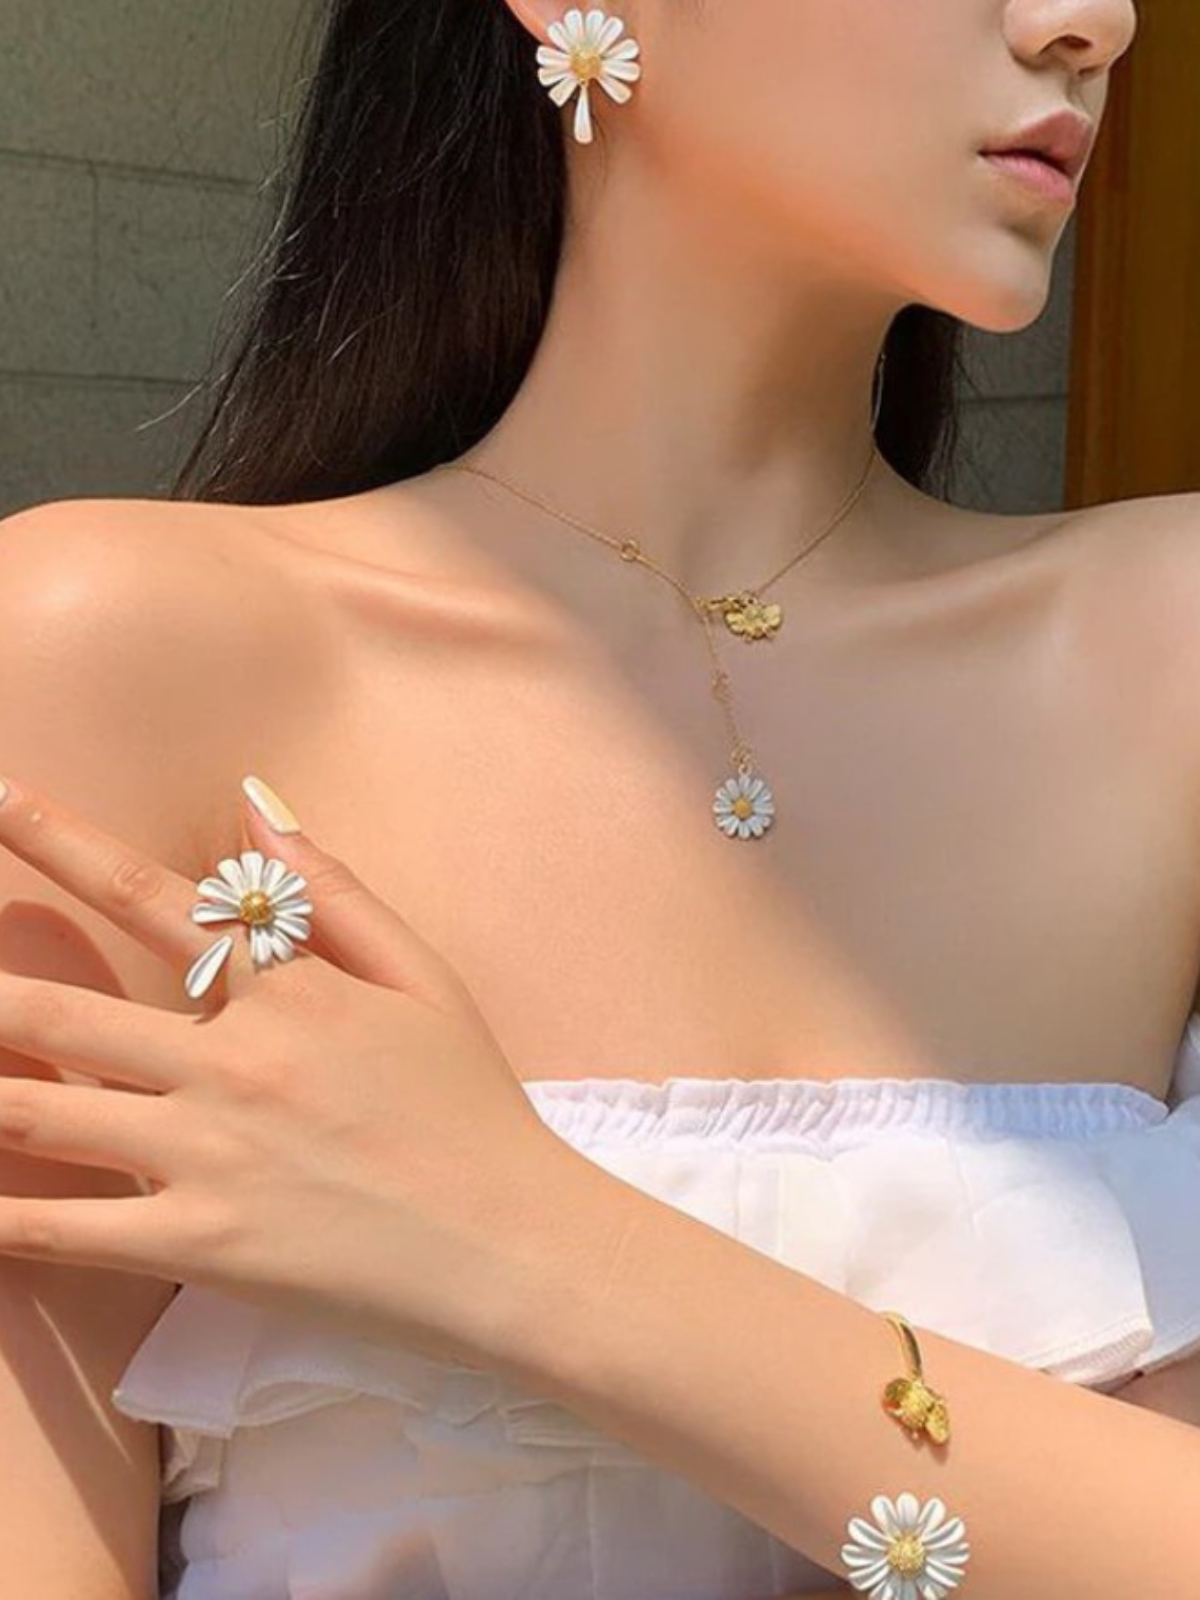 Mia Belle Girls Daisy Flower Earrings | Girls Accessories